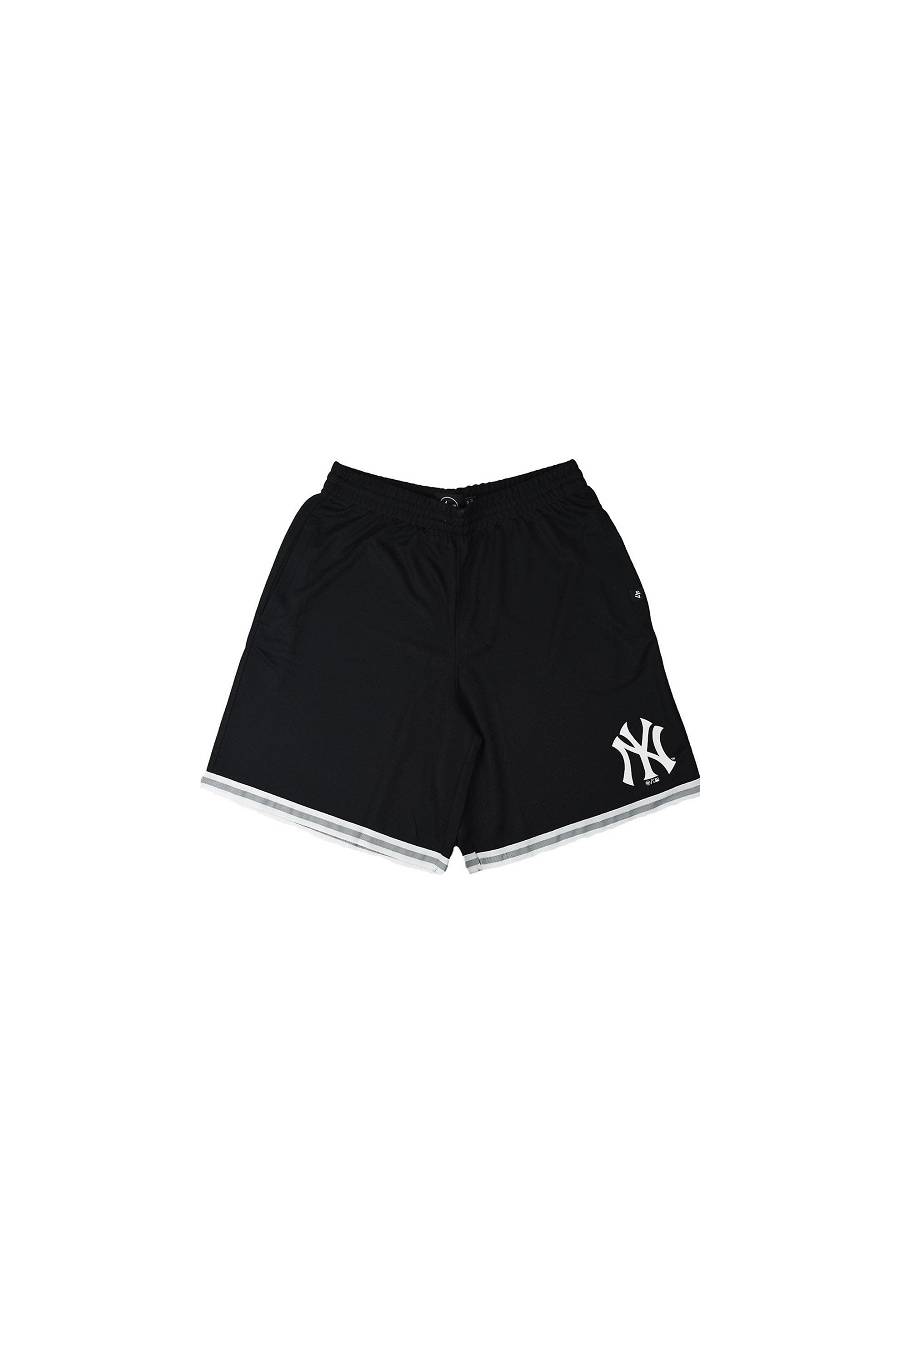 Shorts Brand47 NY Yankees Grafton